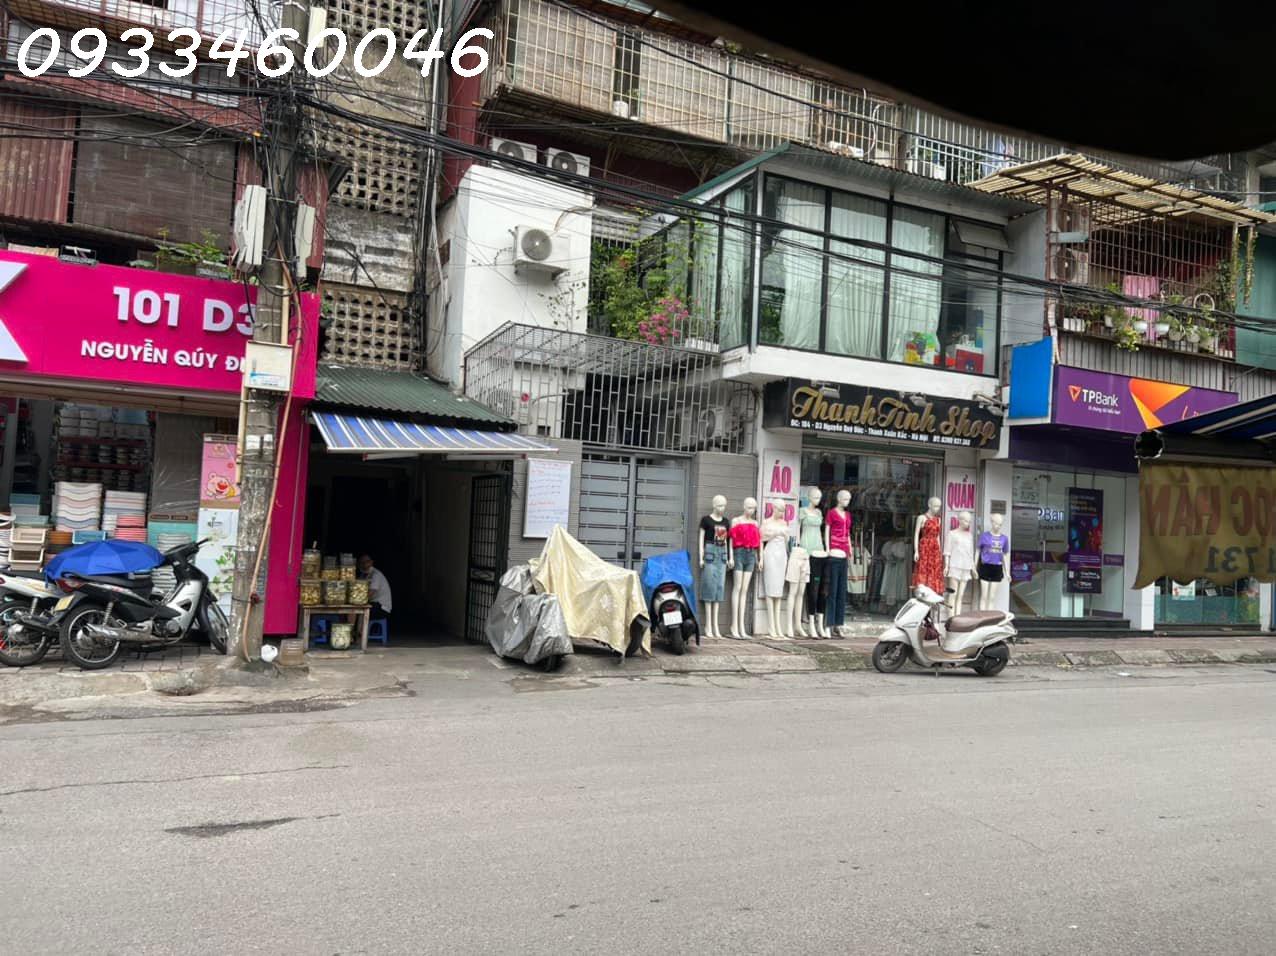 Nhà chính chủ cần cho thuê tại 104 -D3 mặt đường  Nguyễn Quý Đức - Thanh Xuân- Hà Nội. 13677277